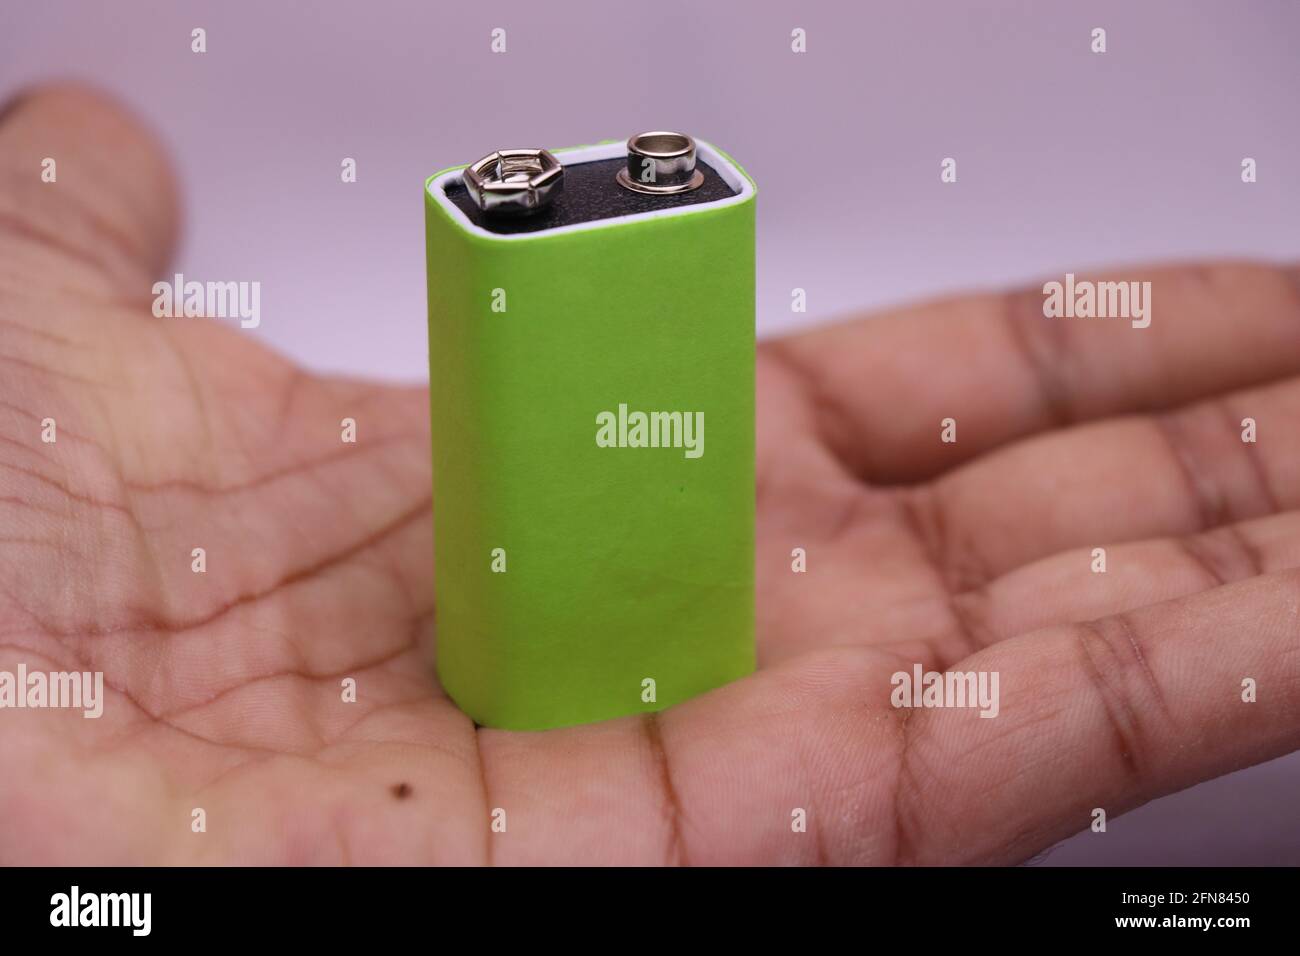 9-v-Batterie mit grünem Bildschirm zum Drucken von Markenetiketten in der Hand. Alkalibatterie in der Hand gehalten Stockfoto